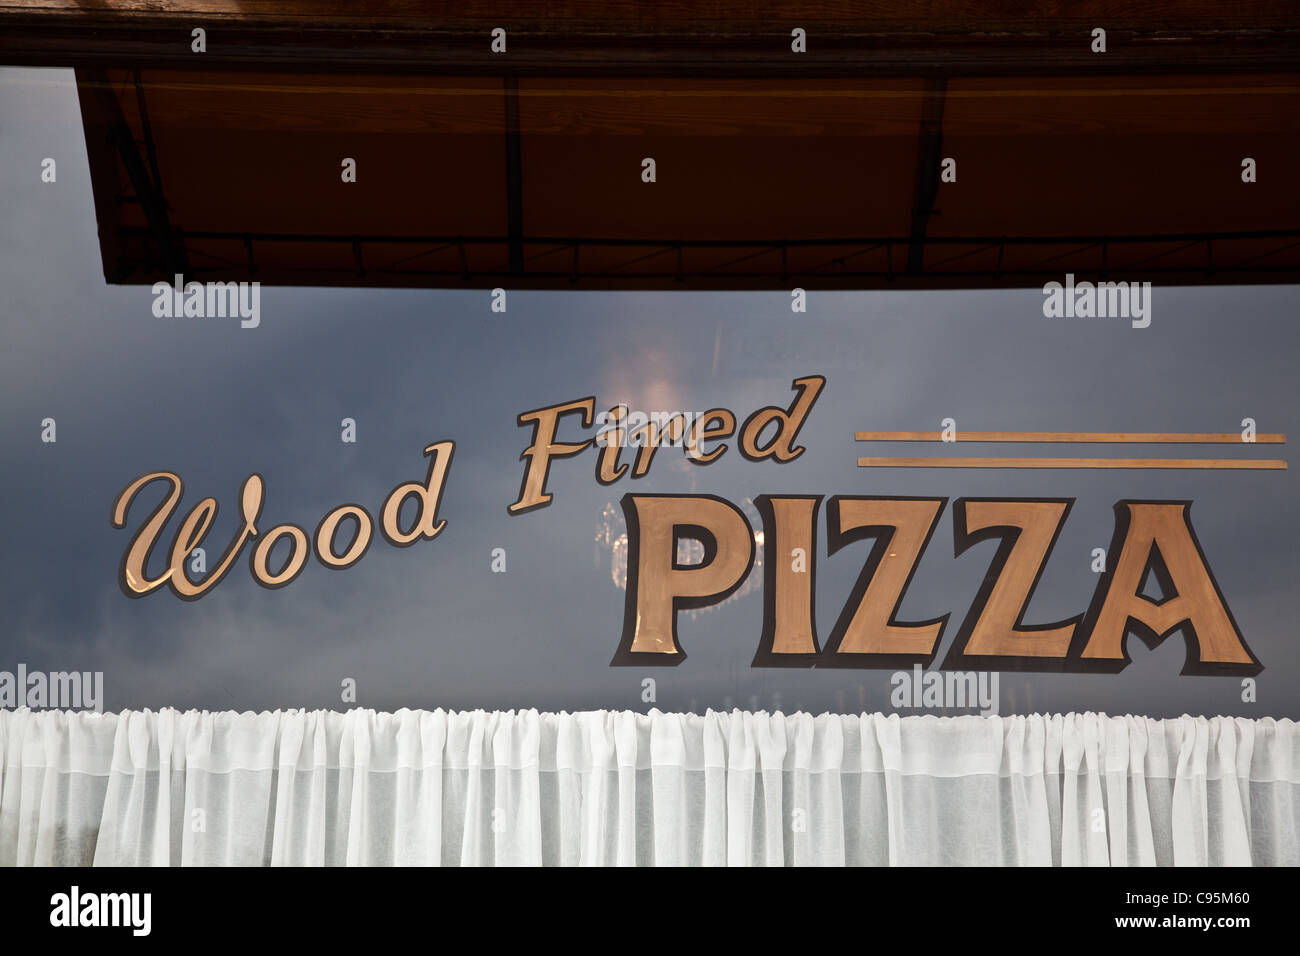 Holz-Pizzaofen Zeichen Stockfoto